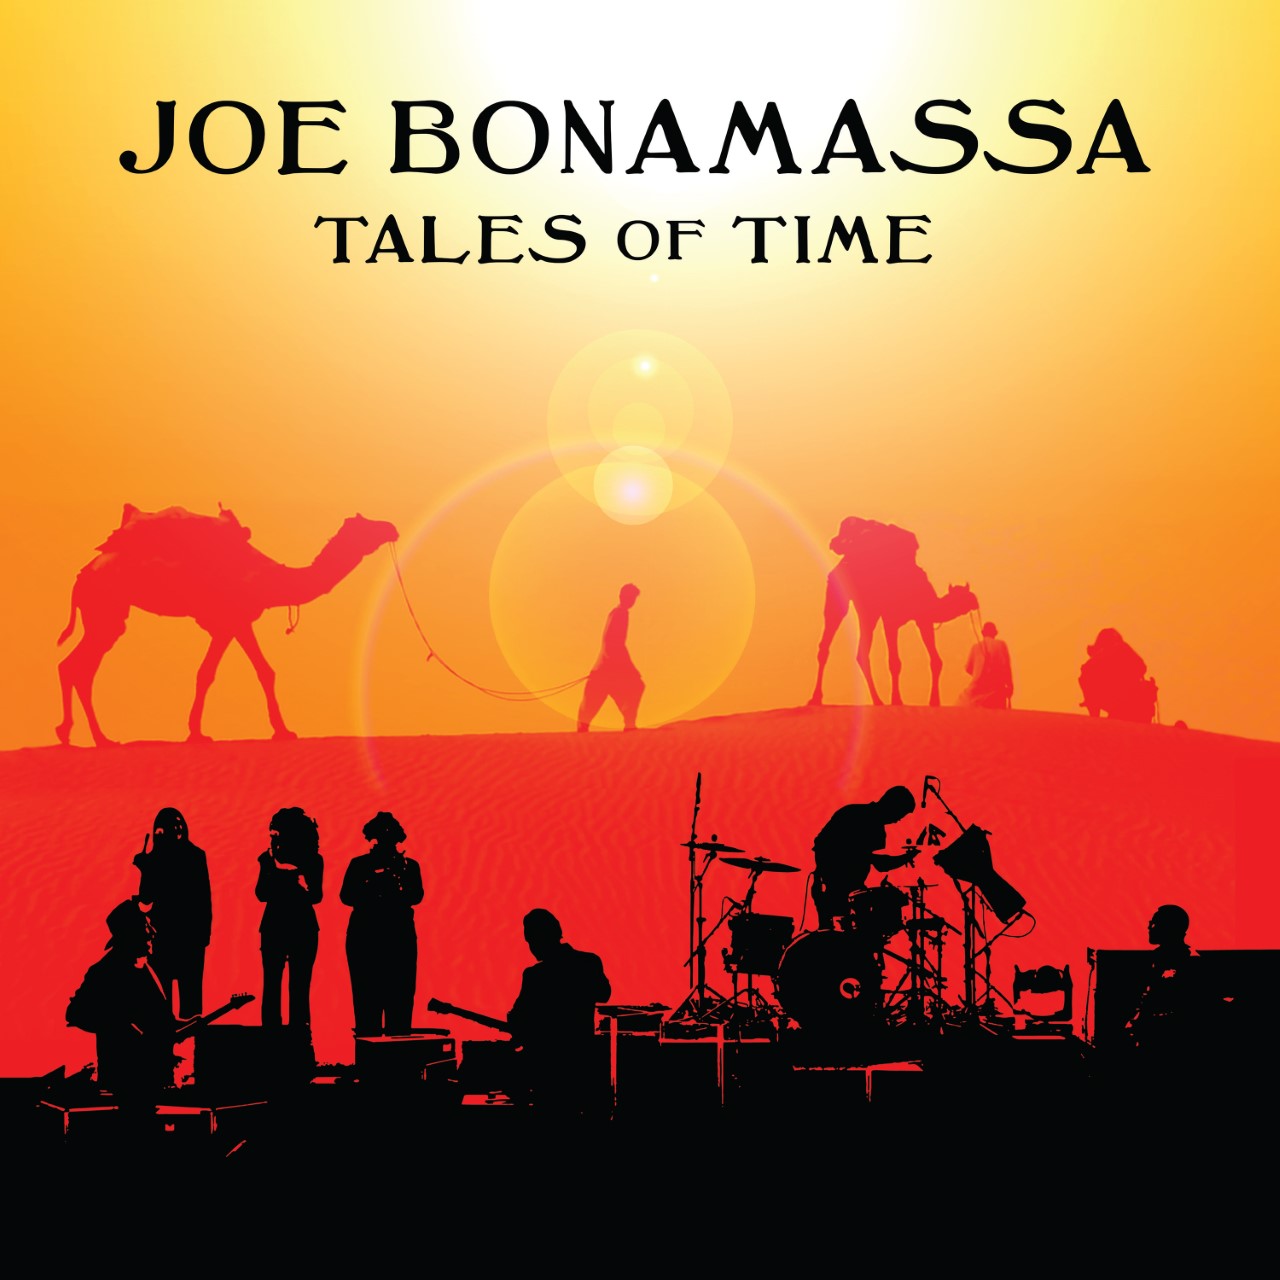 Joe Bonamassa - Tales Of Time - Red Rock Amphitheatre 2022 - BDR 1080.x264.DTS-HD MA